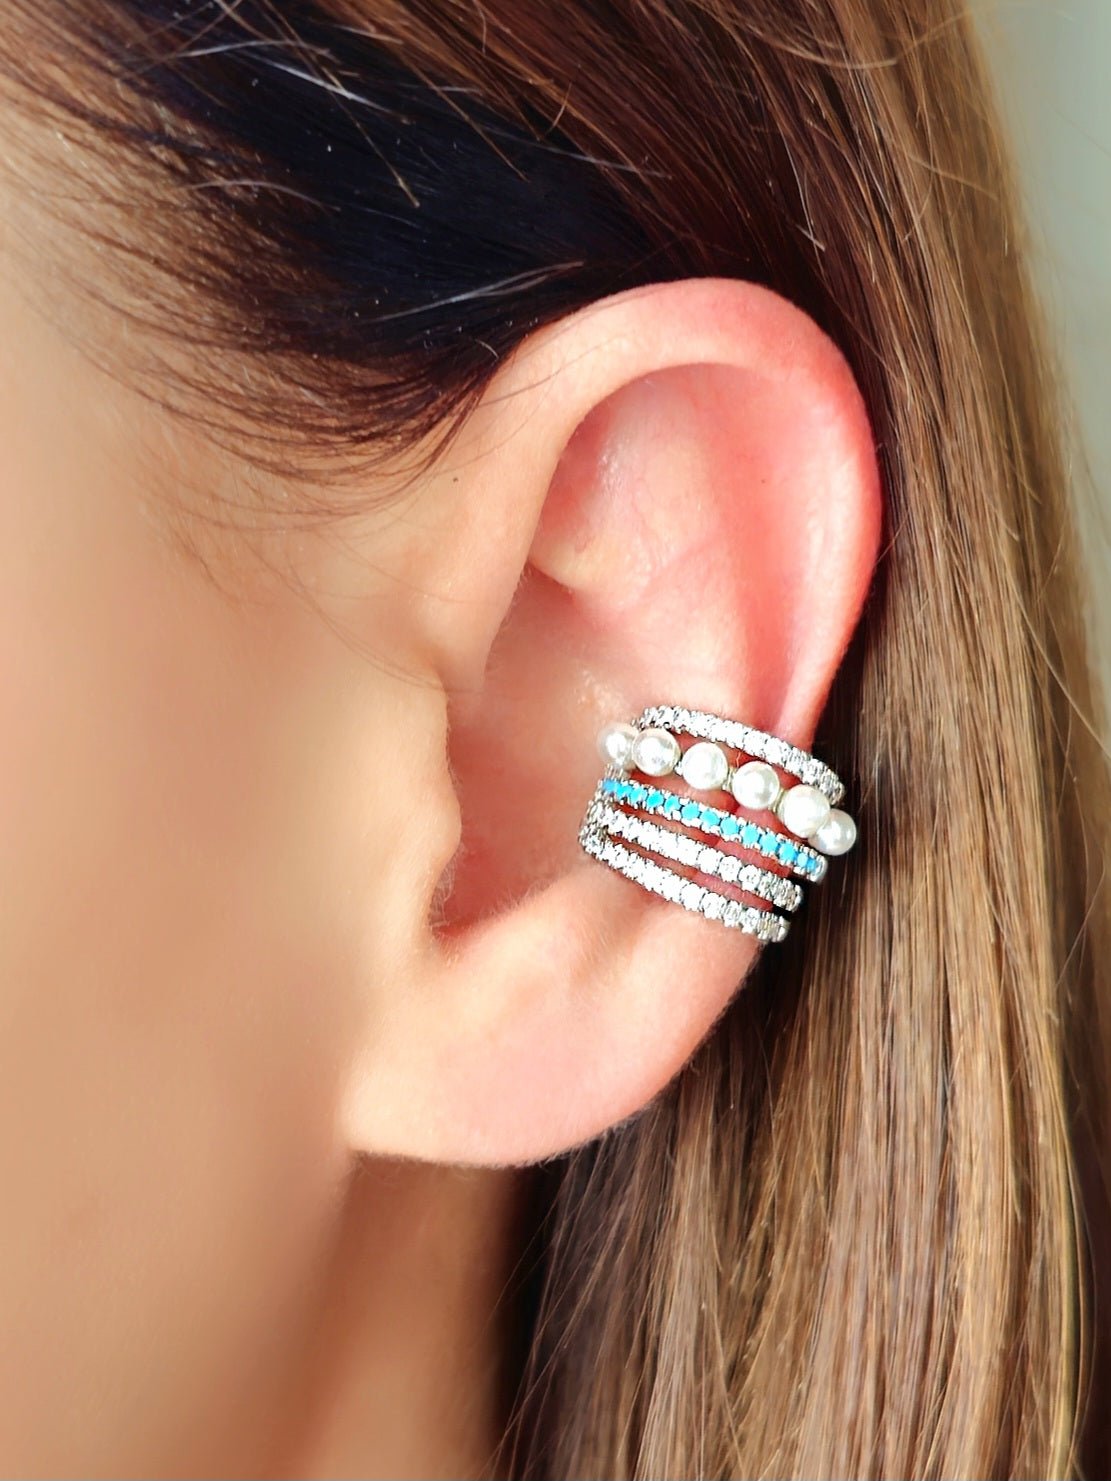 Ear cuff "Ariel" Silver con Pietre Turchesi - 333HOPE333